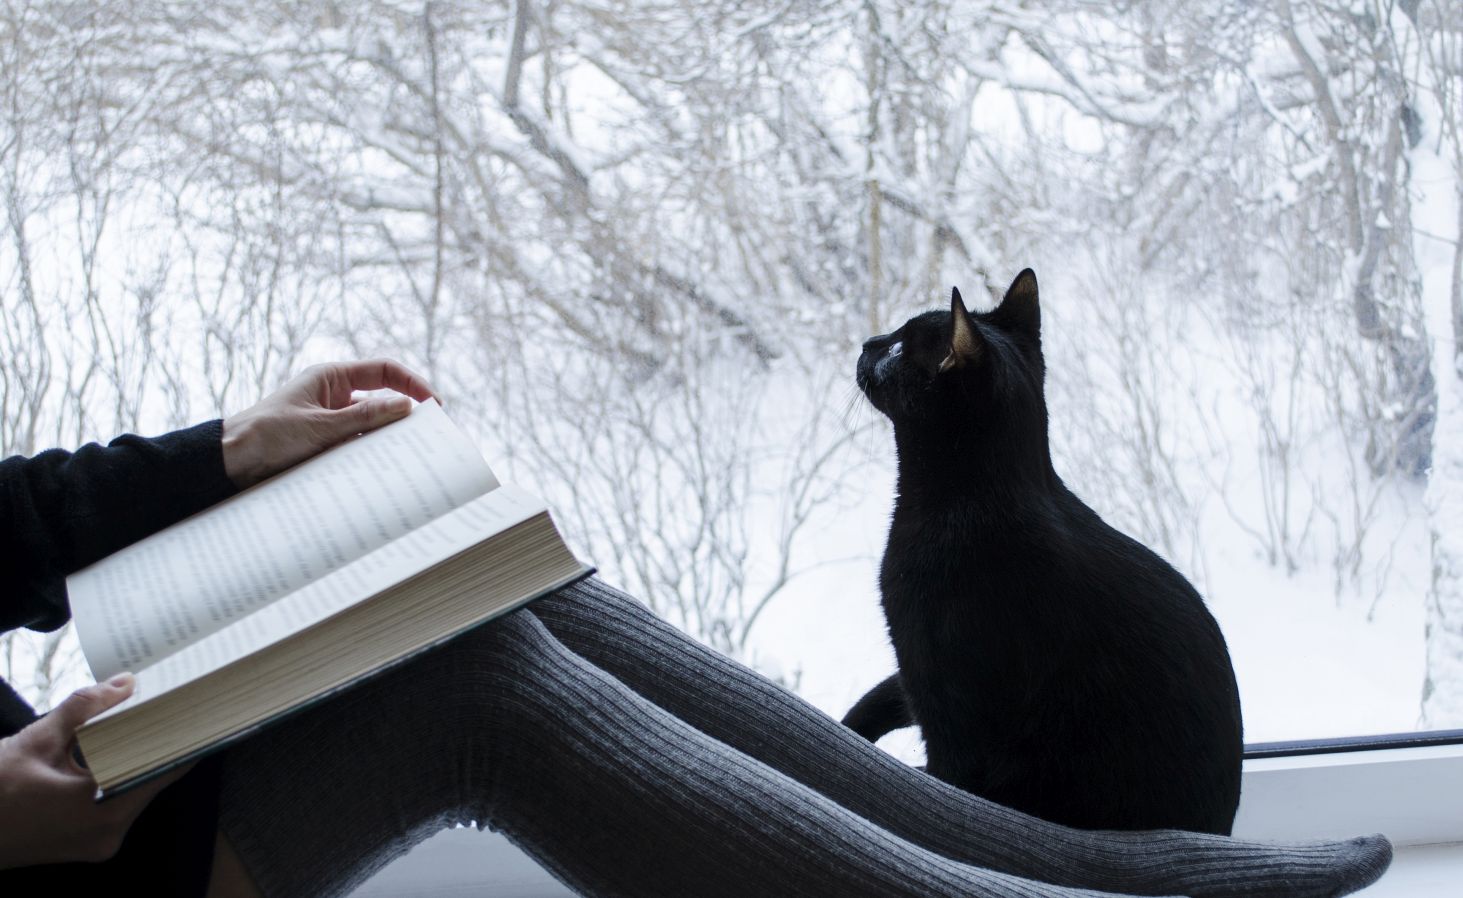 Katze sitzt neben einer lesenden Person vor einem Fenster und beobachtet Schneeflocken.